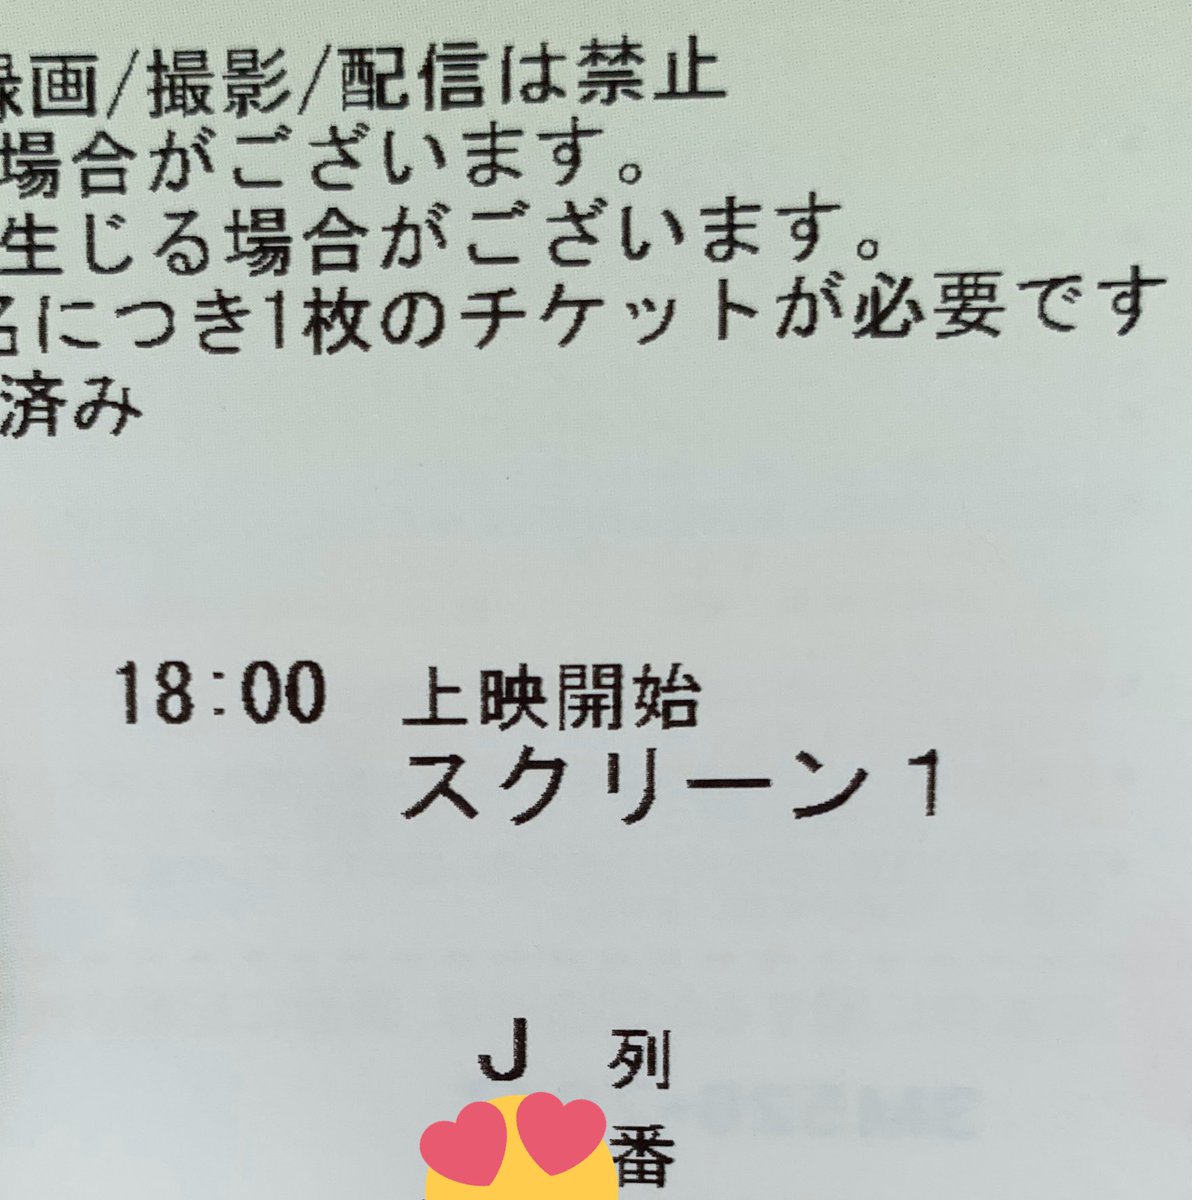 ビュー 嵐 ライブ イング 20 5 嵐のライブビューイング（ライビュ）2020の会場（映画館）は東京のどこで開催される？